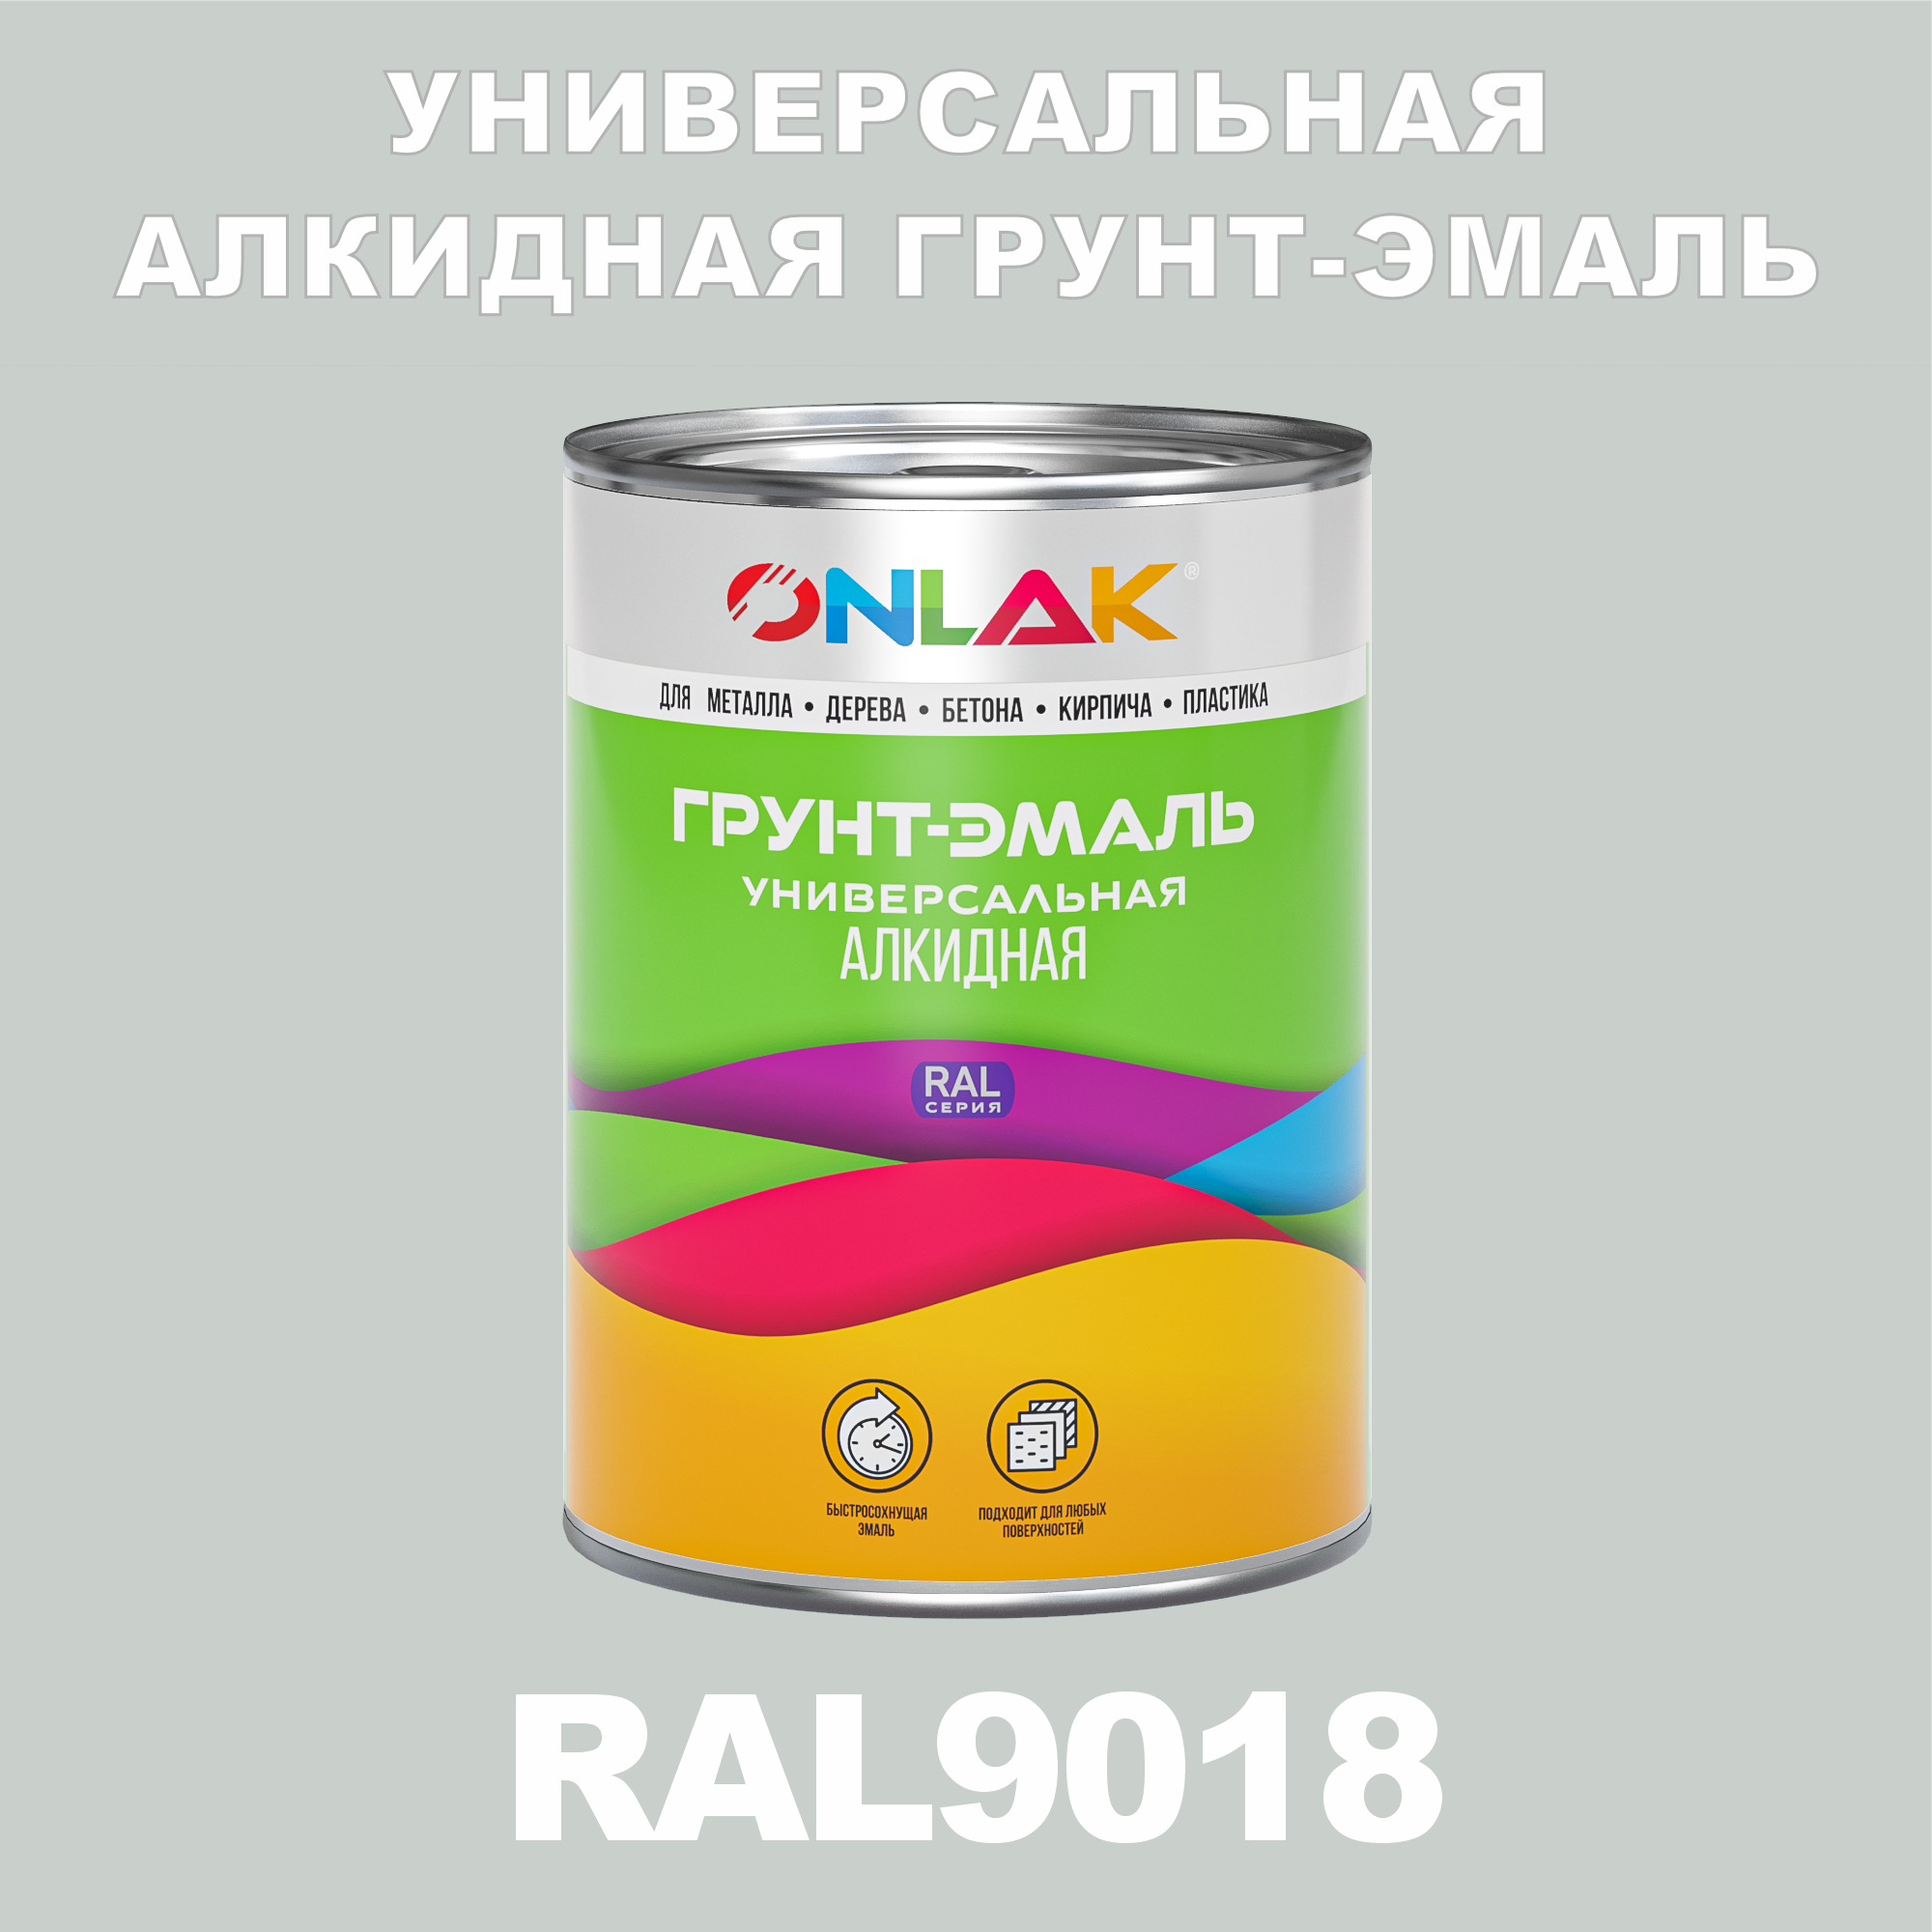 Грунт-эмаль ONLAK 1К RAL9018 антикоррозионная алкидная, по металлу, по ржавчине, 1 кг,